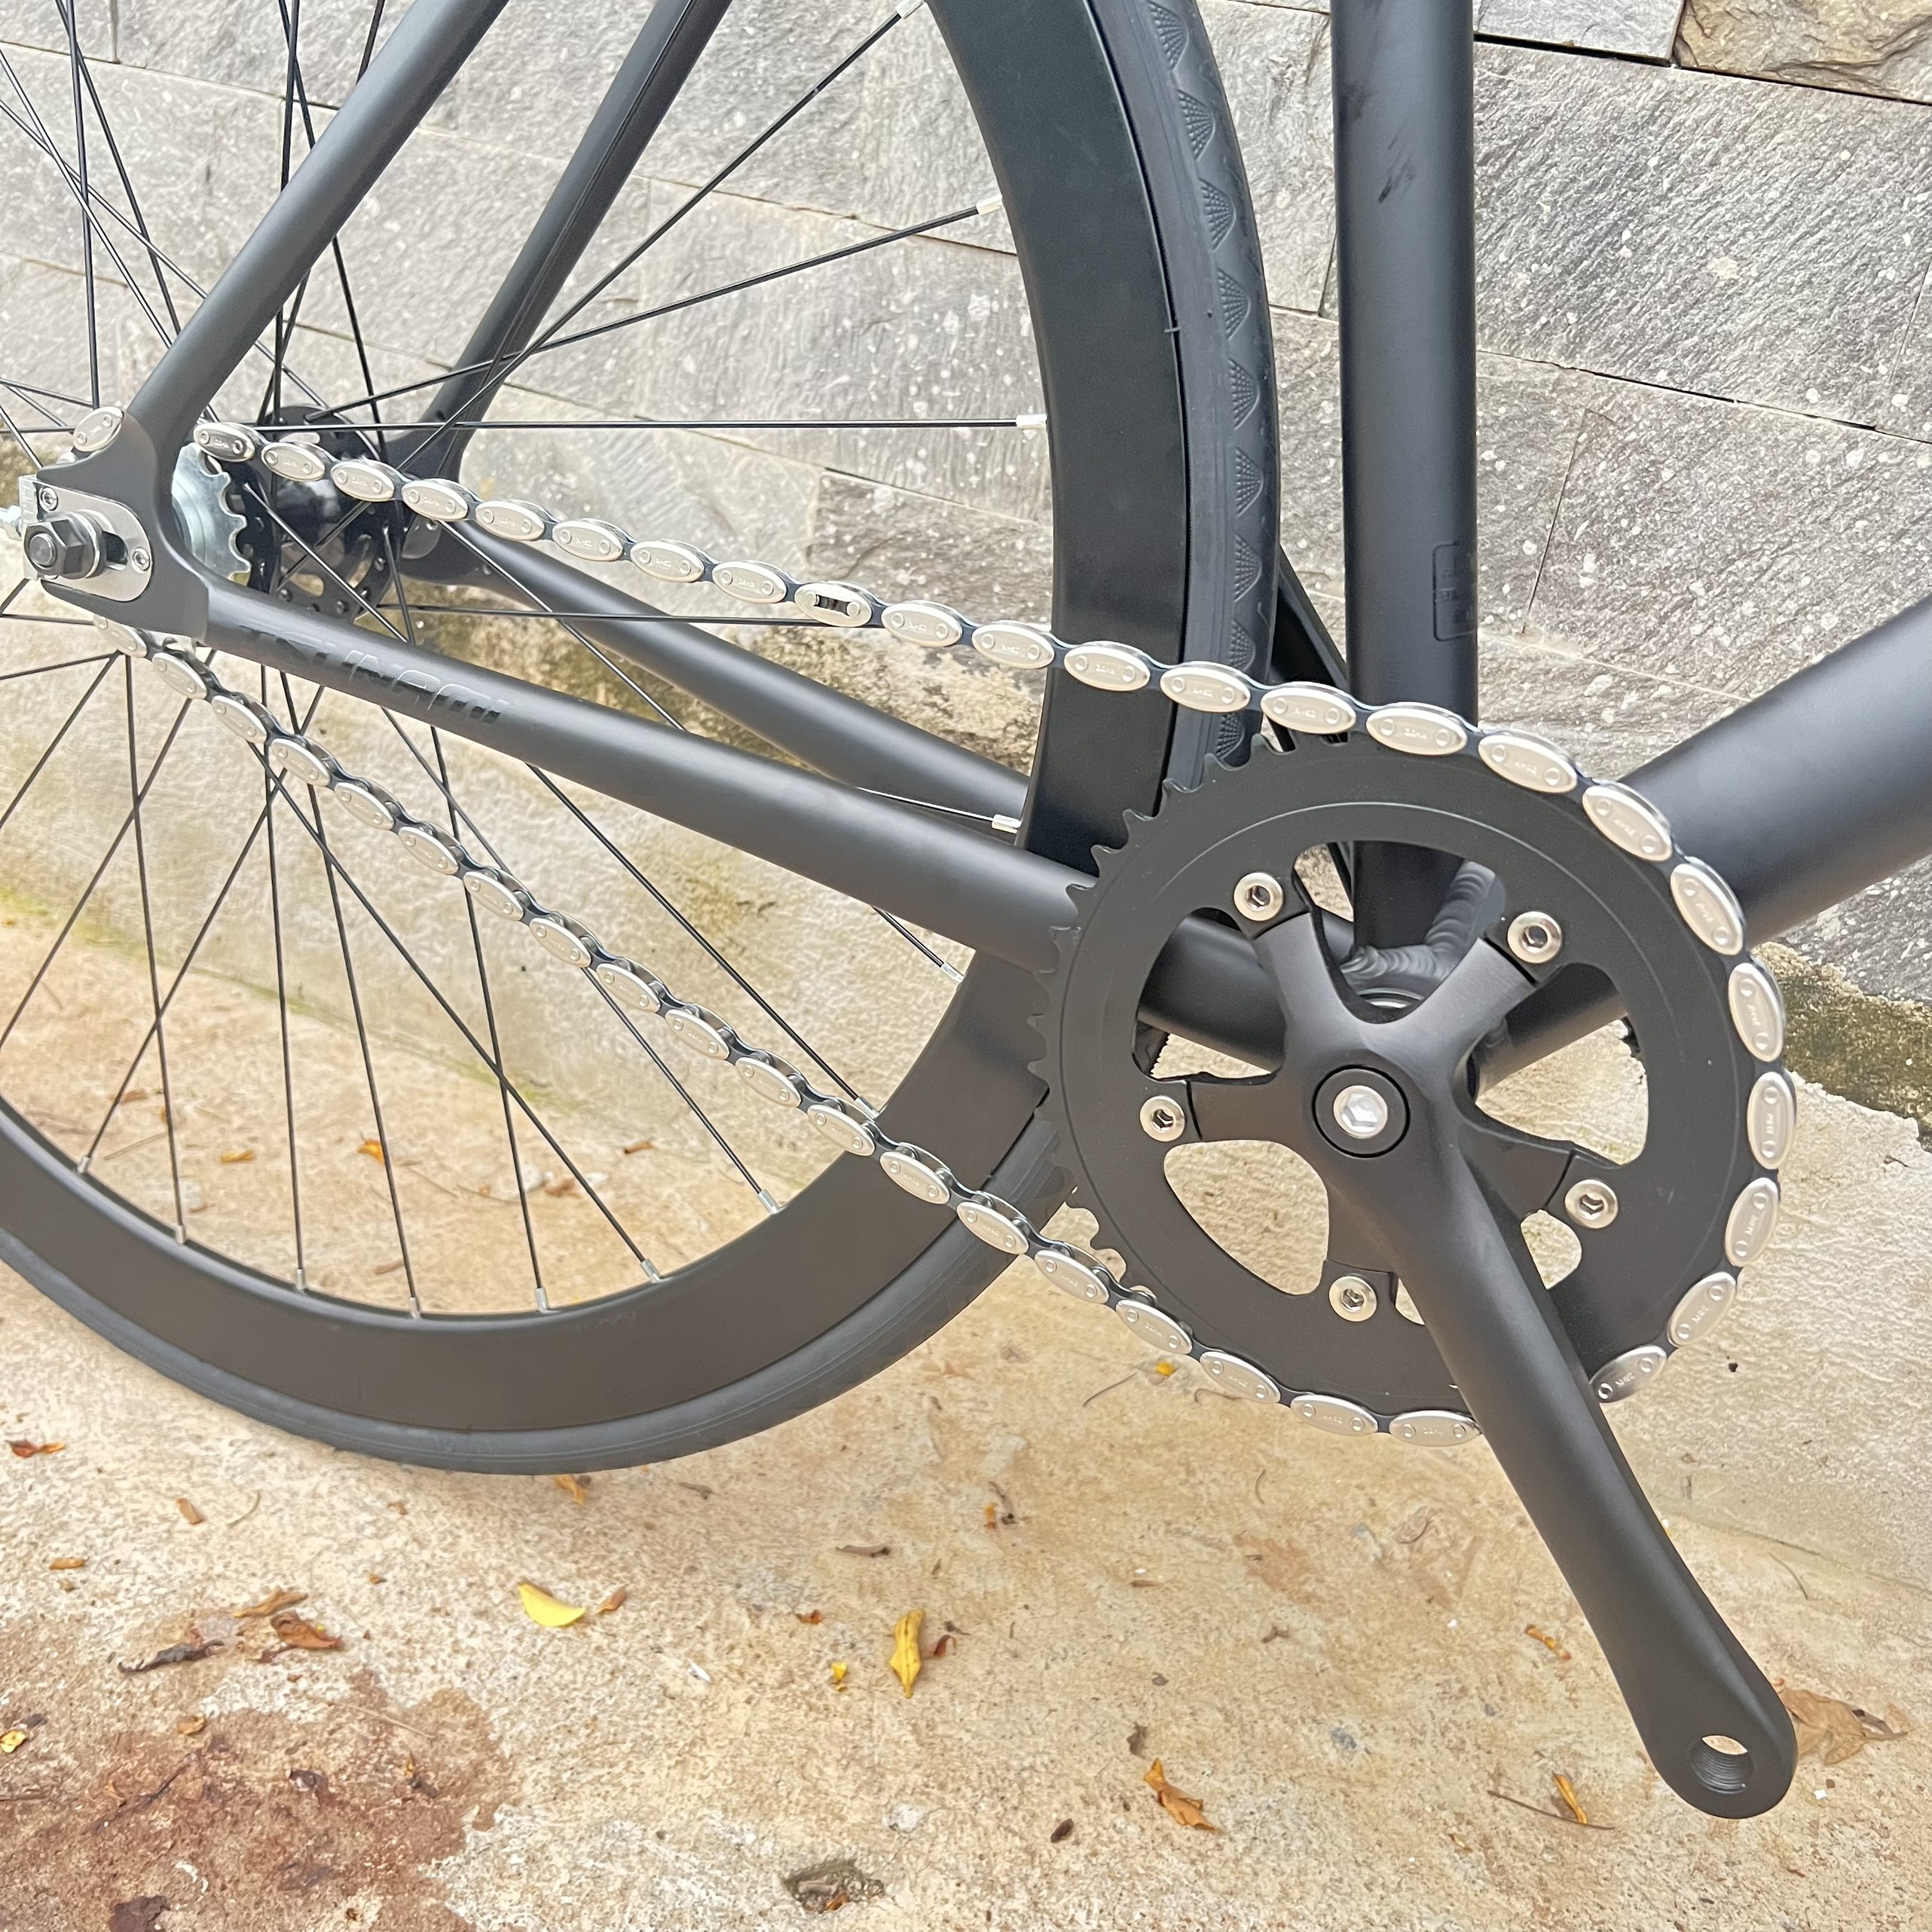 Xe đạp fixed gear TSUNAMI SNM100 cơ bản - Đen nhám chữ đen